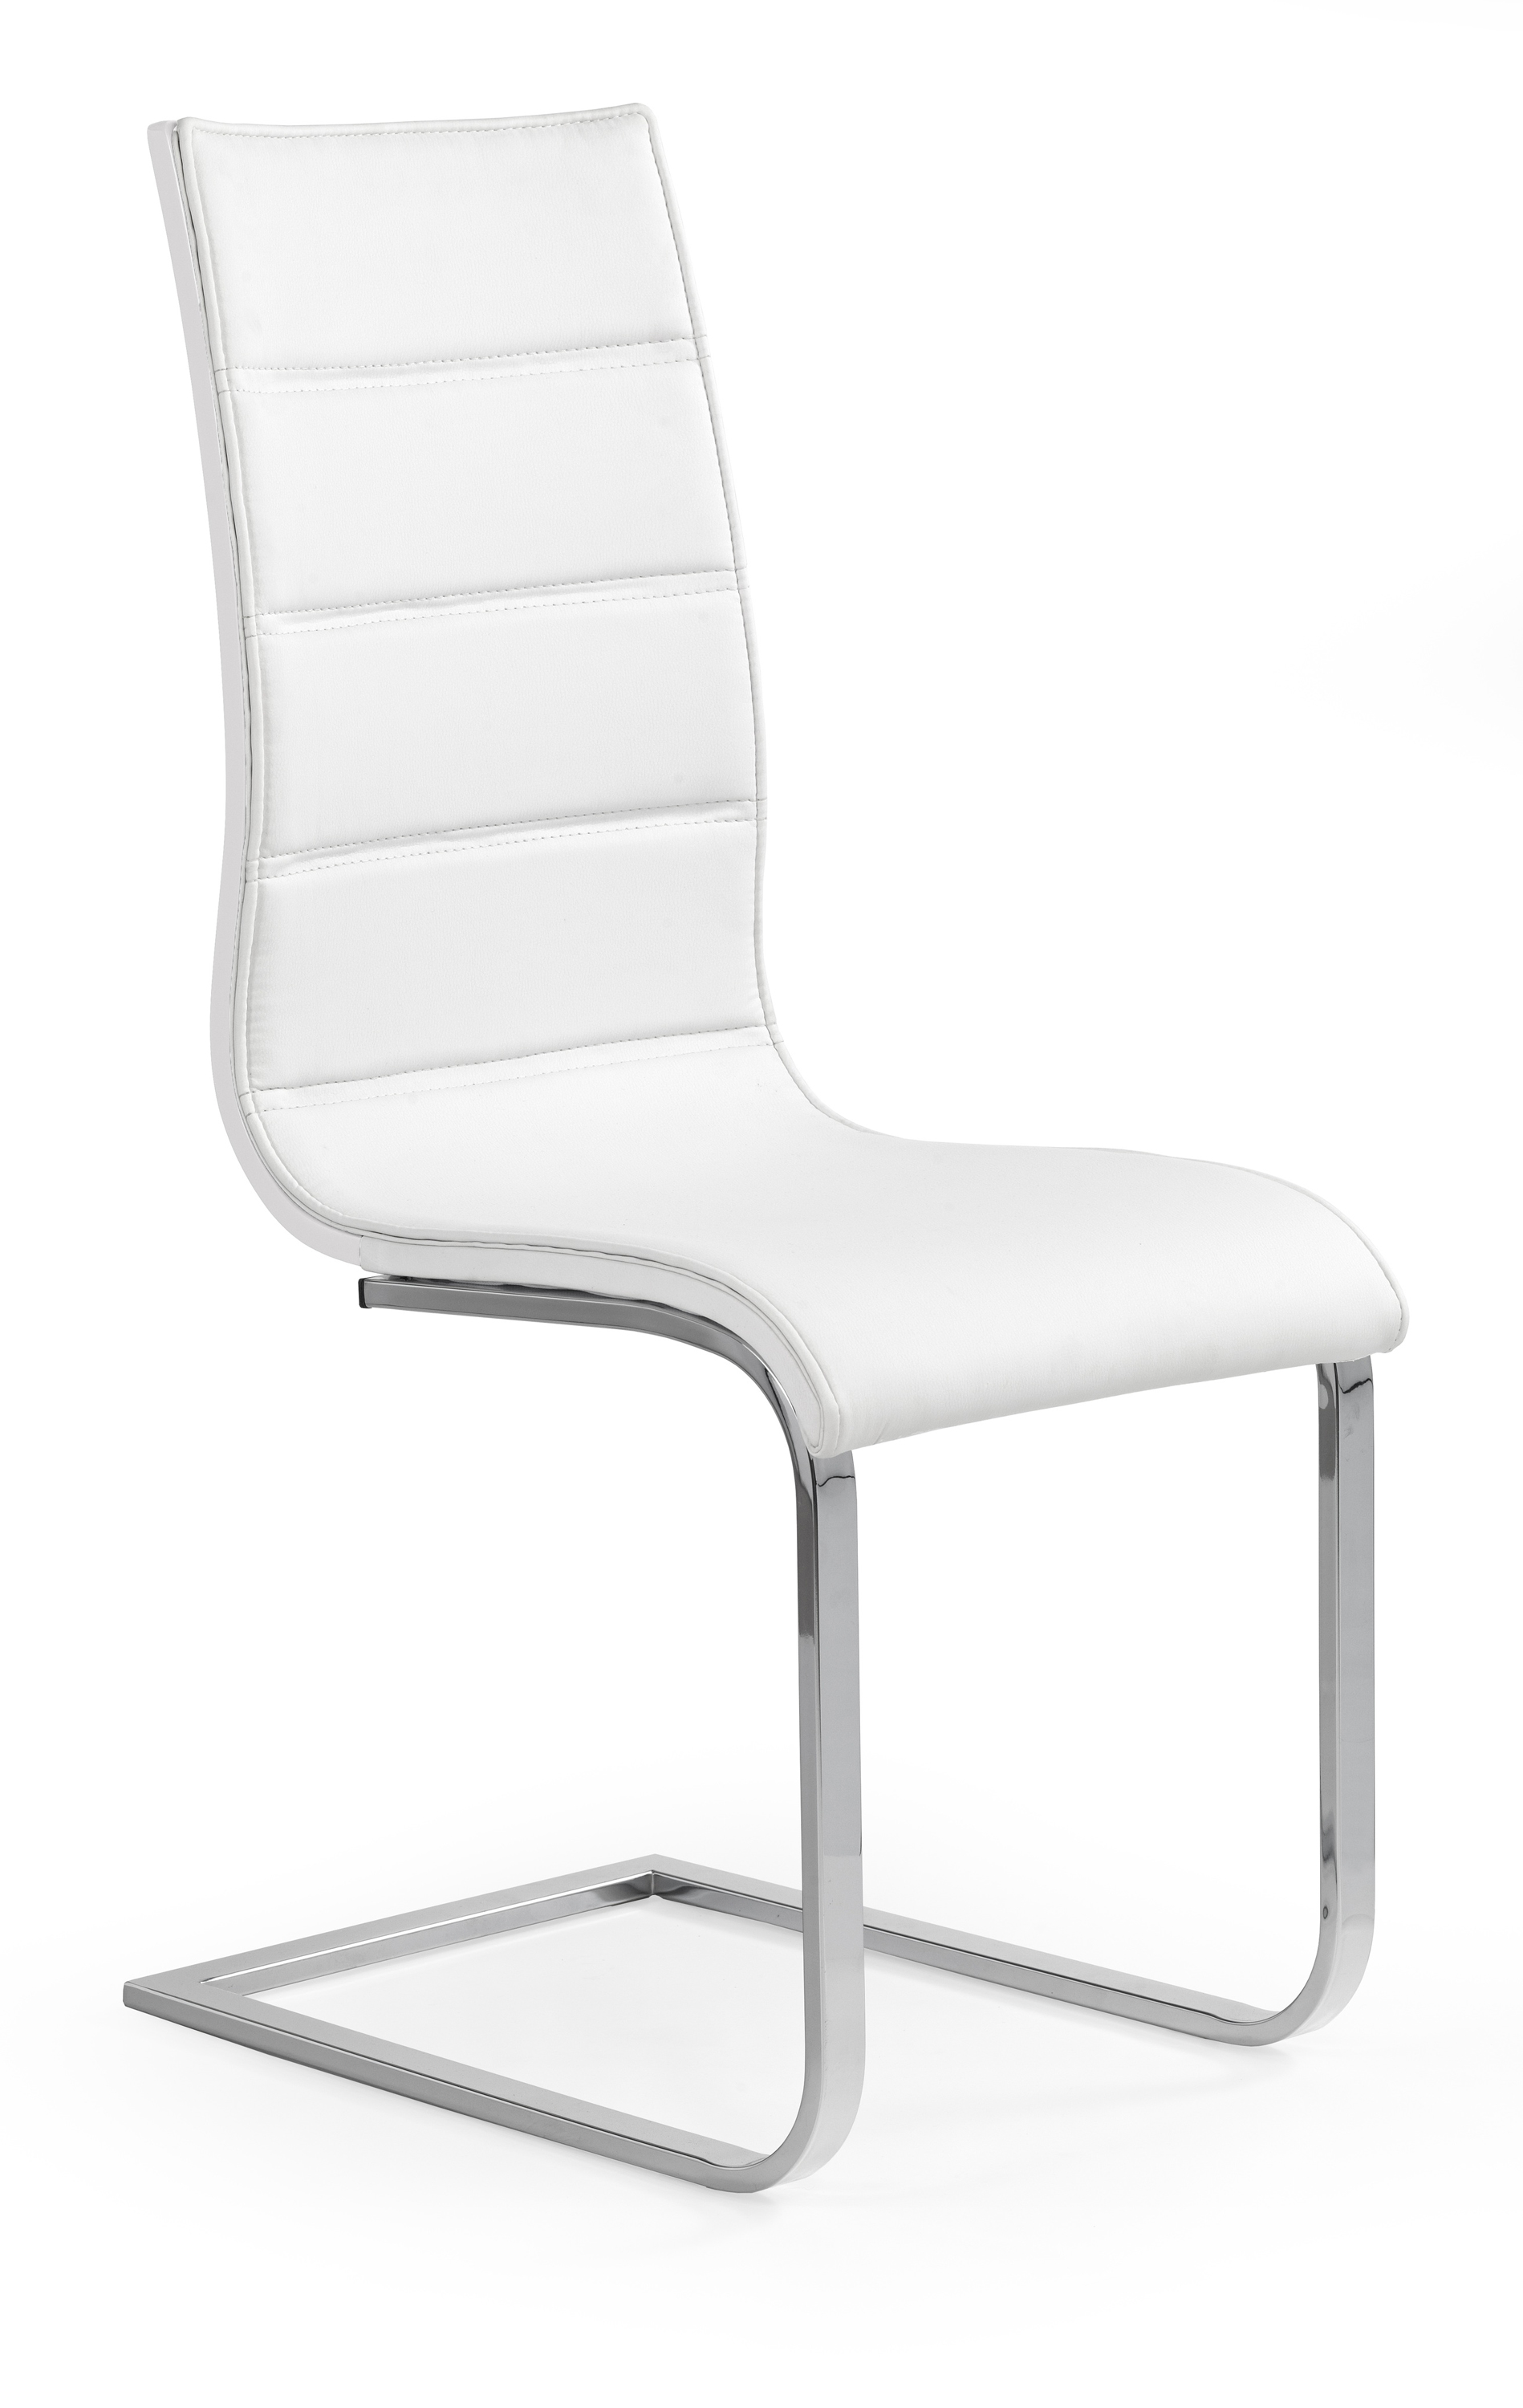 K104 szék - fehér Židle k104 - biale